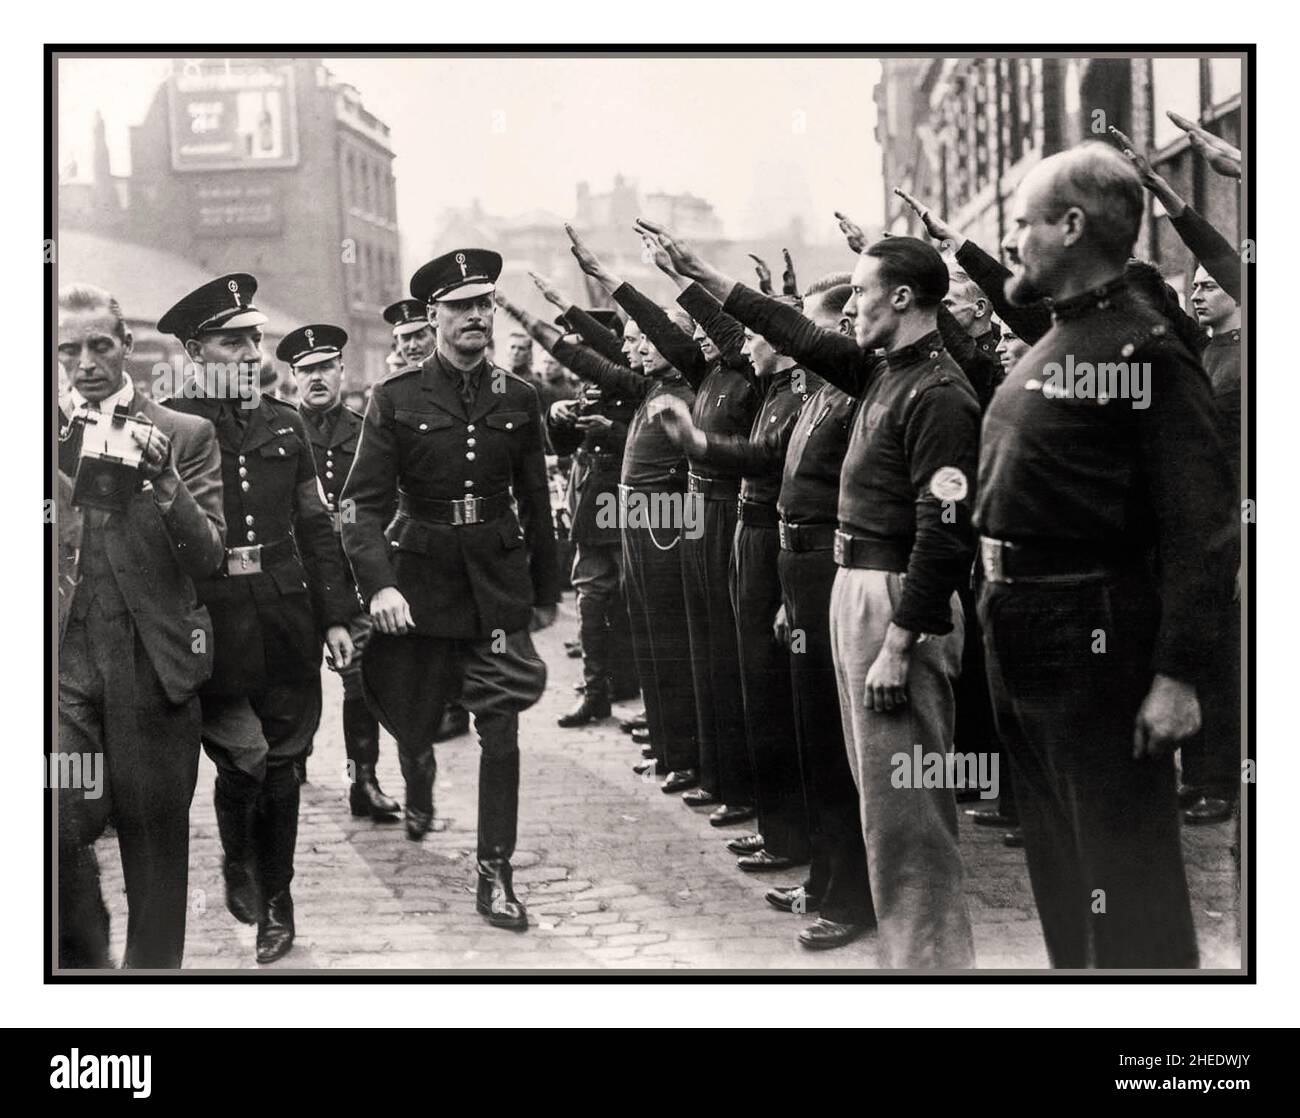 OSWALD MOSLEY BUF PARTY 1930s Gran Bretagna Oswald Mosley, leader dell'"Unione britannica dei fascisti", che prende un saluto di tipo nazista di estrema destra dai sostenitori durante un rally fazioso a Londra 1937 Capo dell'Unione britannica dei fascisti membri dell'Unione dei fascisti, saluta il loro leader, Sir Oswald Mosley. Oswald Mosley, il leader dell'Unione britannica dei fascisti. Foto Stock